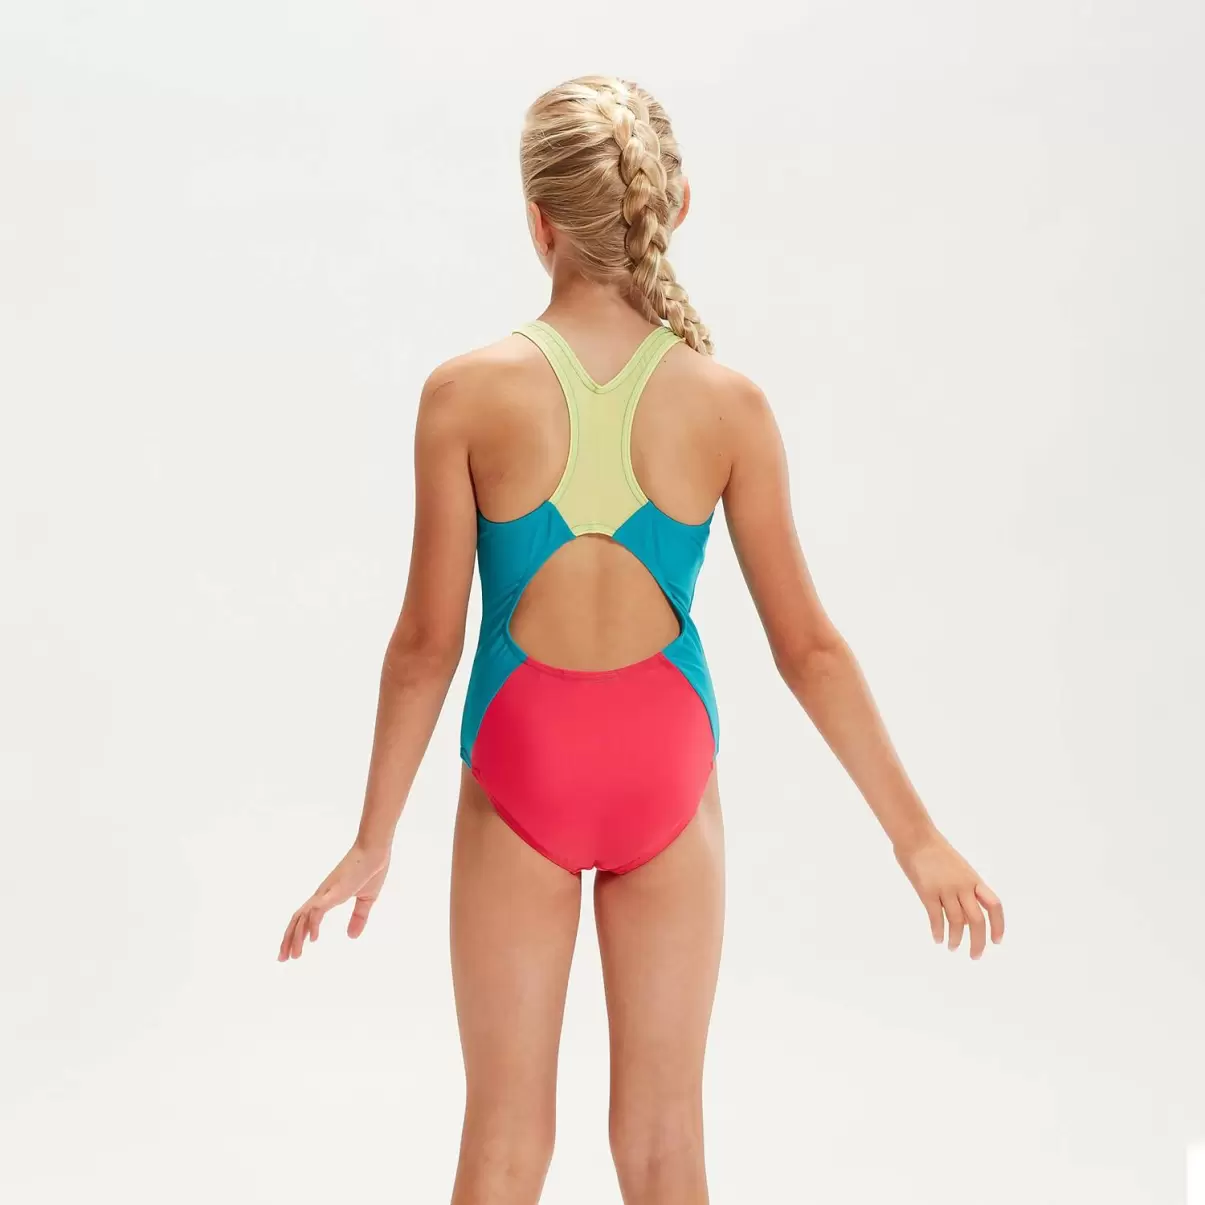 Kinder Speedo Farbblock Spiritback Badeanzug Für Mädchen Pink/Aqua Mädchen Bademode - 1